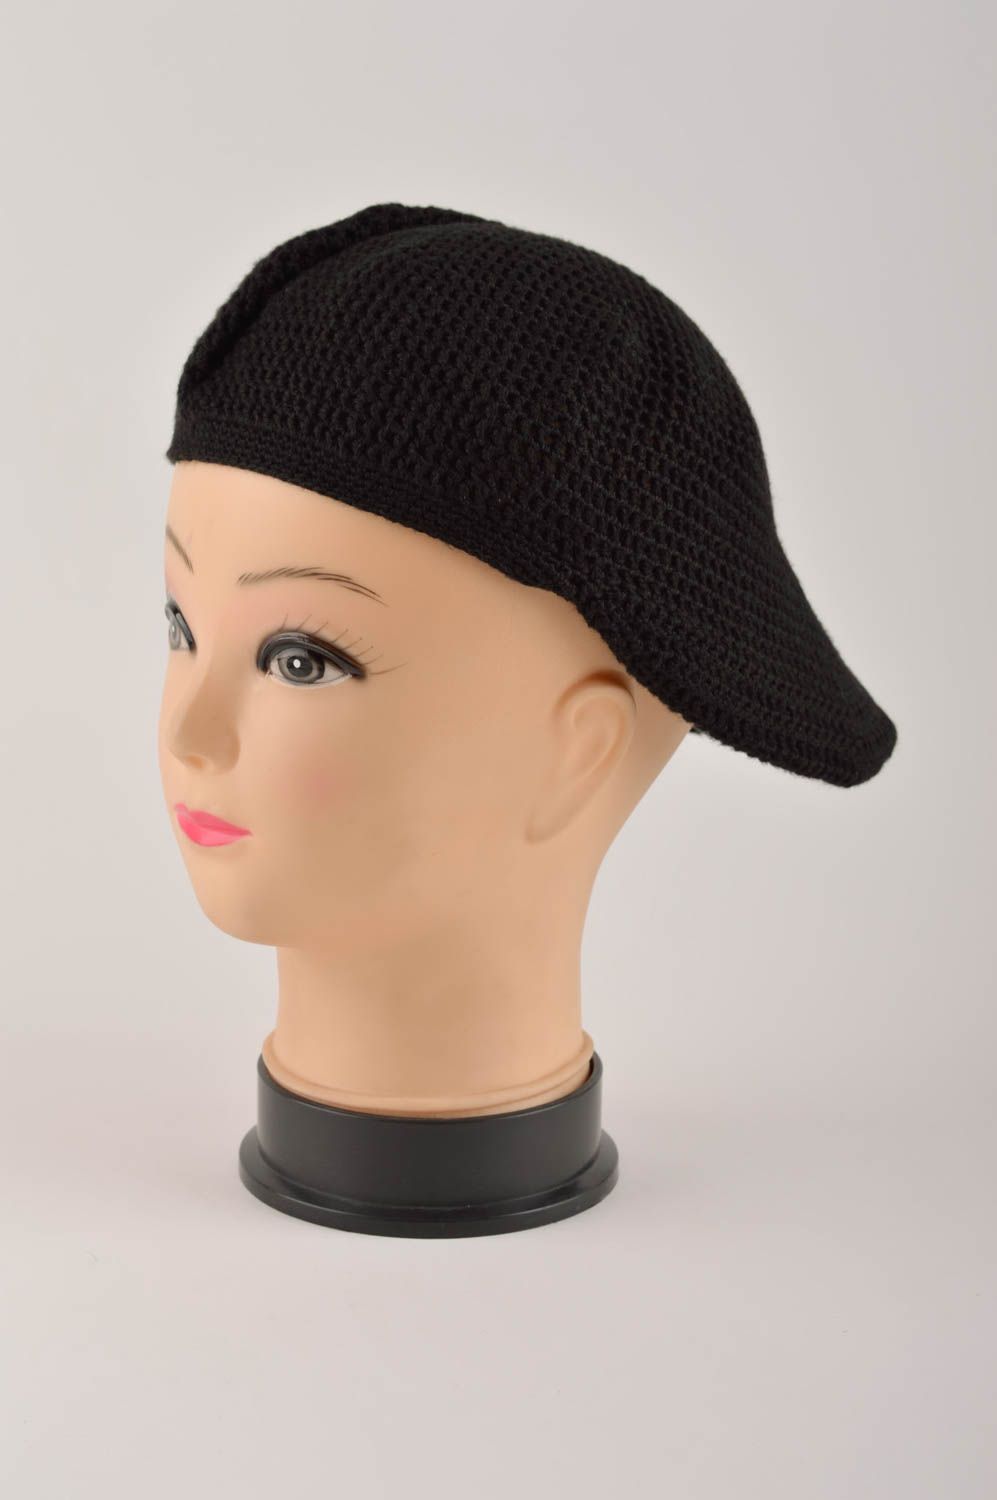 Вязаная кепка ручной работы вязаная шапка черная стильная зимняя шапка фото 5